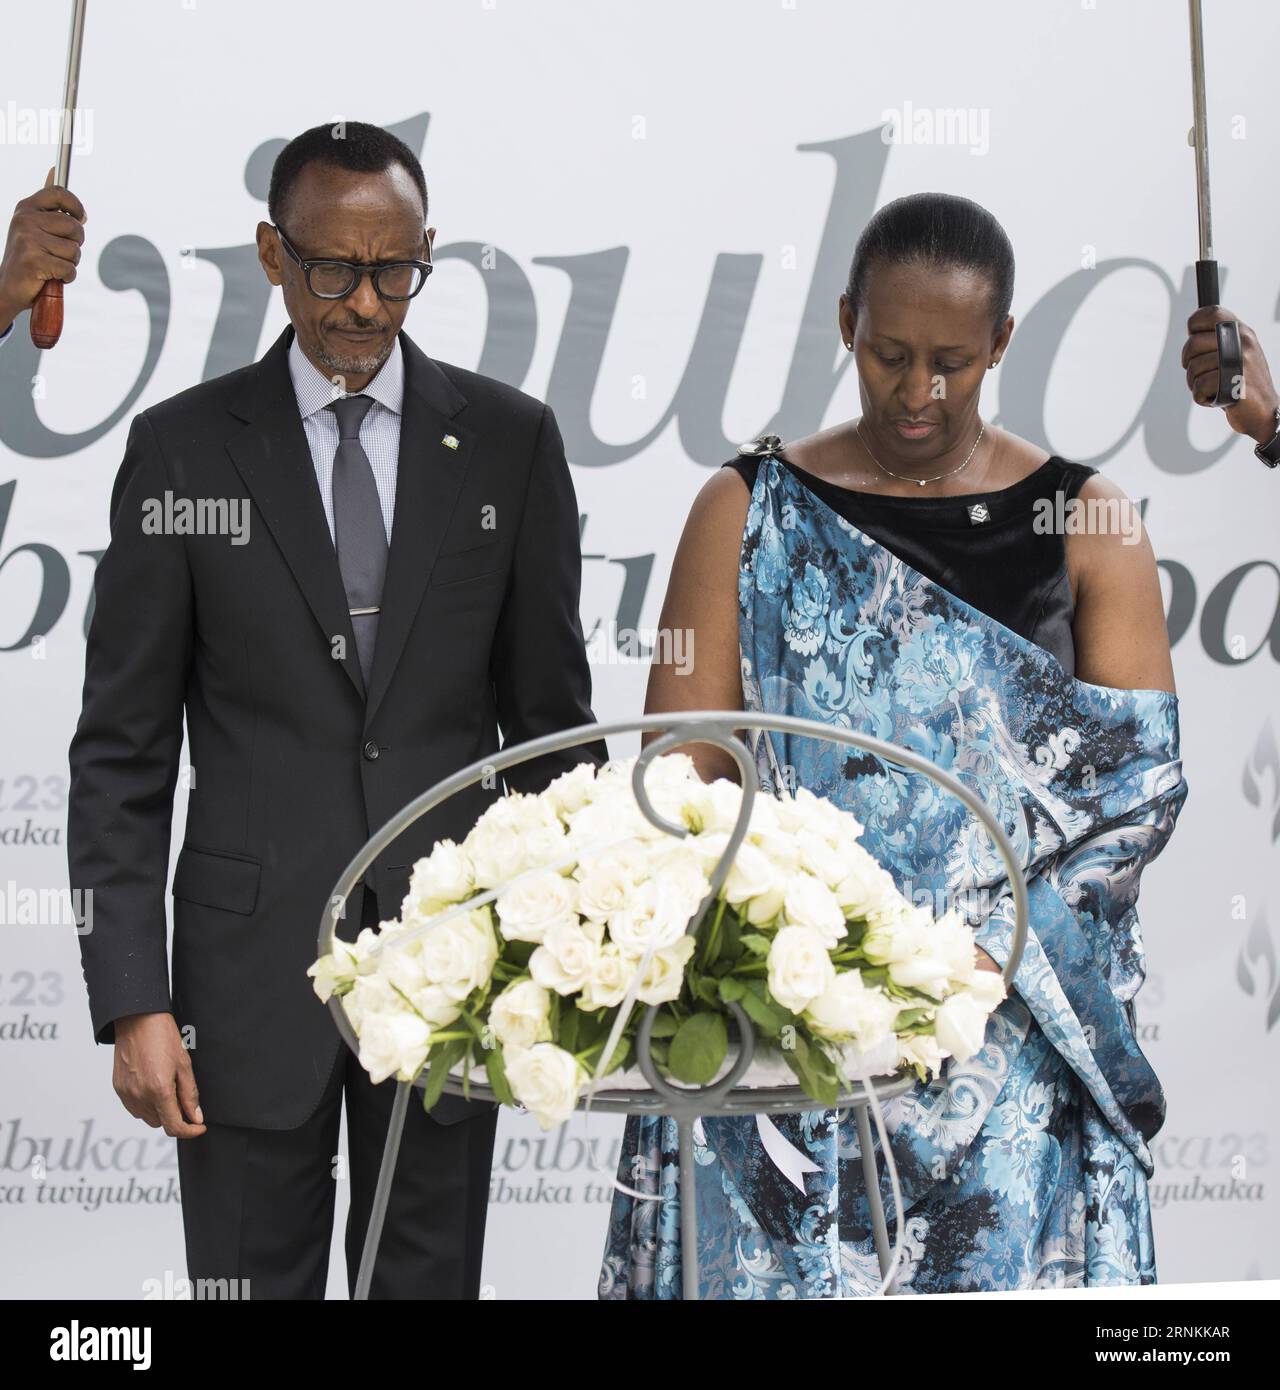 (170408) -- KIGALI, 8 aprile 2017 -- il presidente ruandese Paul Kagame e la First Lady Jeannette Kagame hanno gettato una corona nelle fosse comuni della vittima di genocidio a Kigali, Ruanda, il 7 aprile 2017. L'accensione della fiamma della speranza e la posa della corona al Kigali Genocide Memorial Centre hanno segnato l'inizio della 23a commemorazione del genocidio del 1994 in cui sono state uccise più di un milione di persone in Ruanda, principalmente Tutsi e Hutus moderato. (Zxj) RWANDA-KIGALI-GENOCIDIO-COMMEMORAZIONE stringer PUBLICATIONxNOTxINxCHN Kigali 8 aprile 2017 il presidente ruandese Paul Kagame e la First Lady Jeannette Kagame Lay a WR Foto Stock